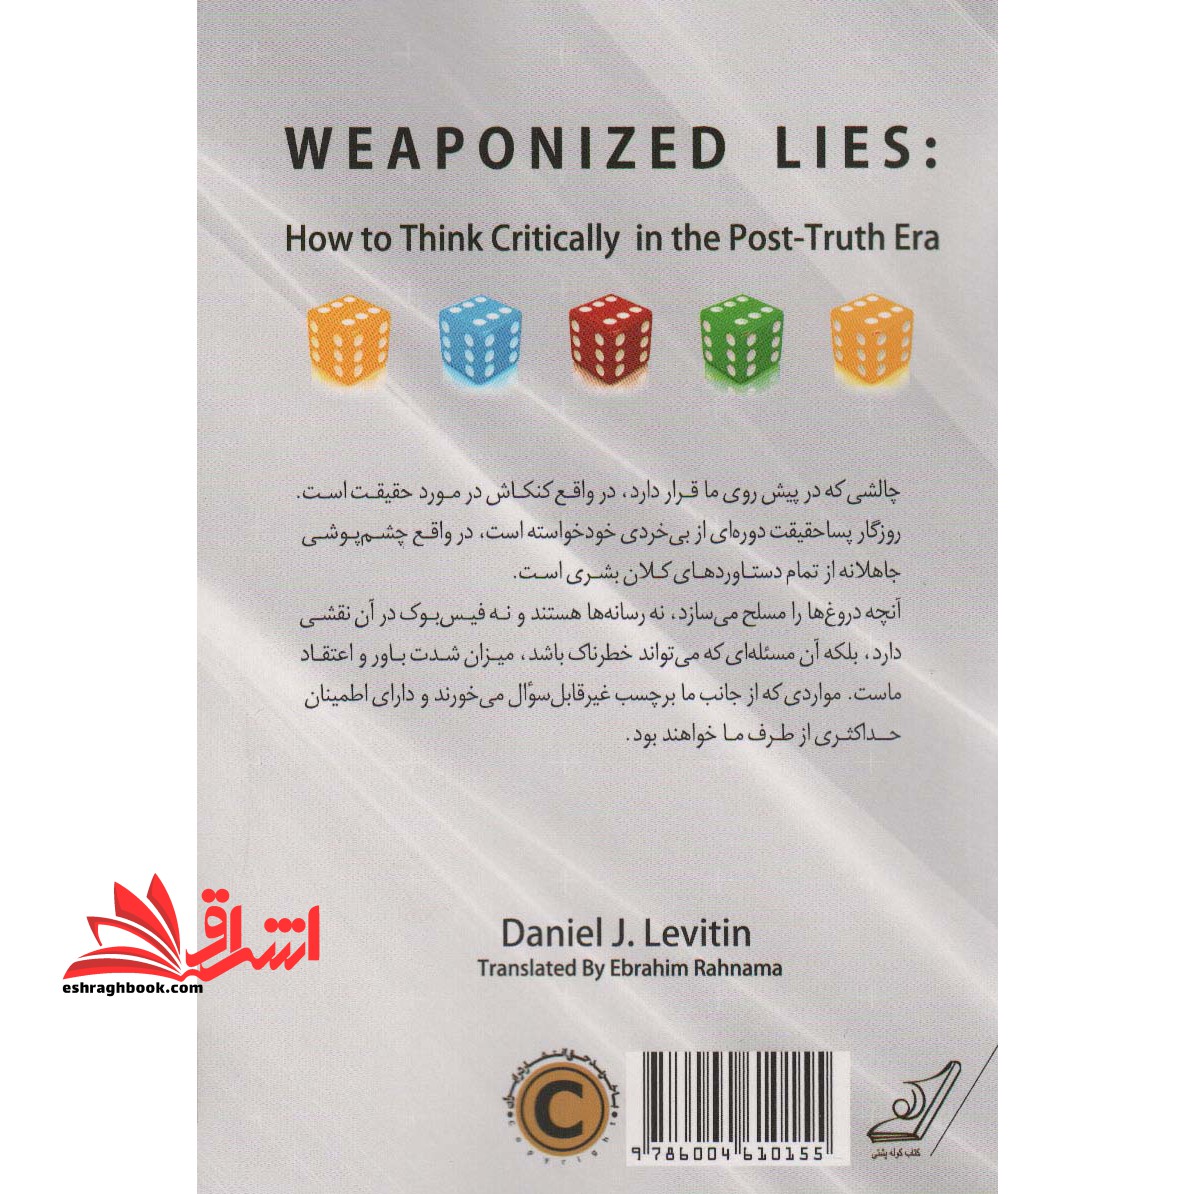 کتاب دروغ های مسلح - (شیوه های اندیشیدن انتقادی در عصر پسا حقیقت)